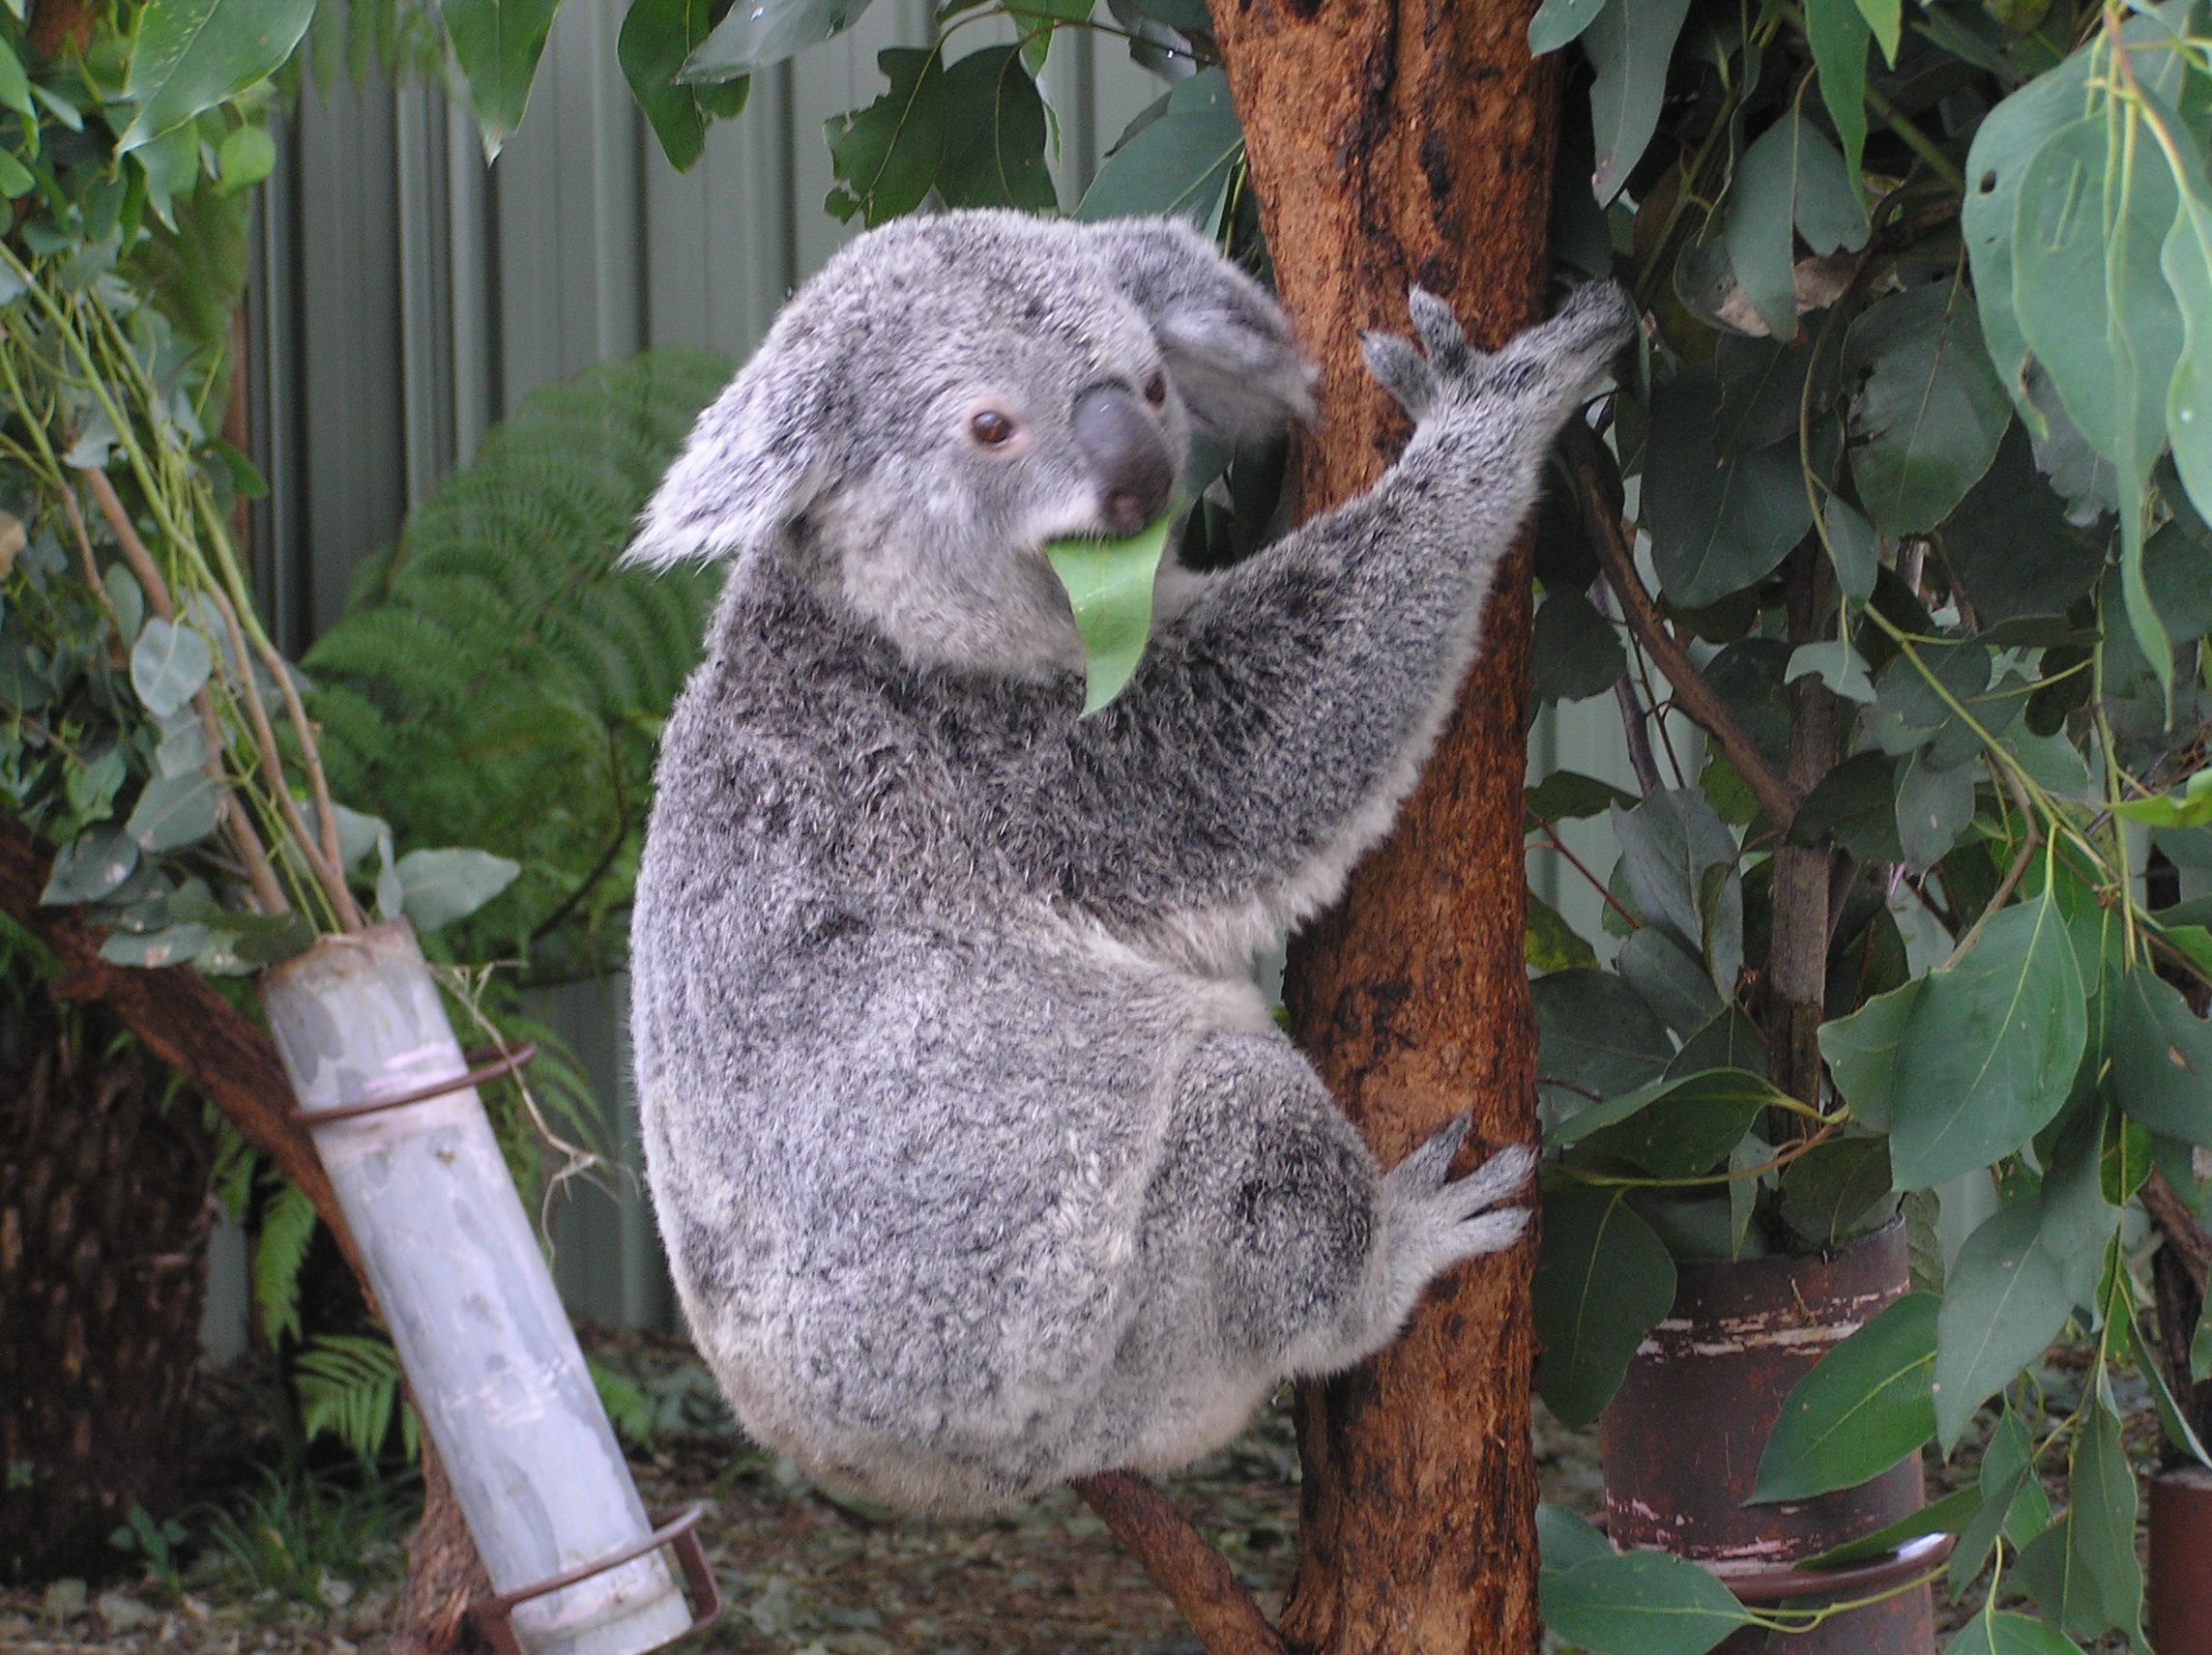 Un koala gris y peludo con una nariz grande y negra agarra el tronco de un eucalipto mientras se alimenta de una de las hojas.